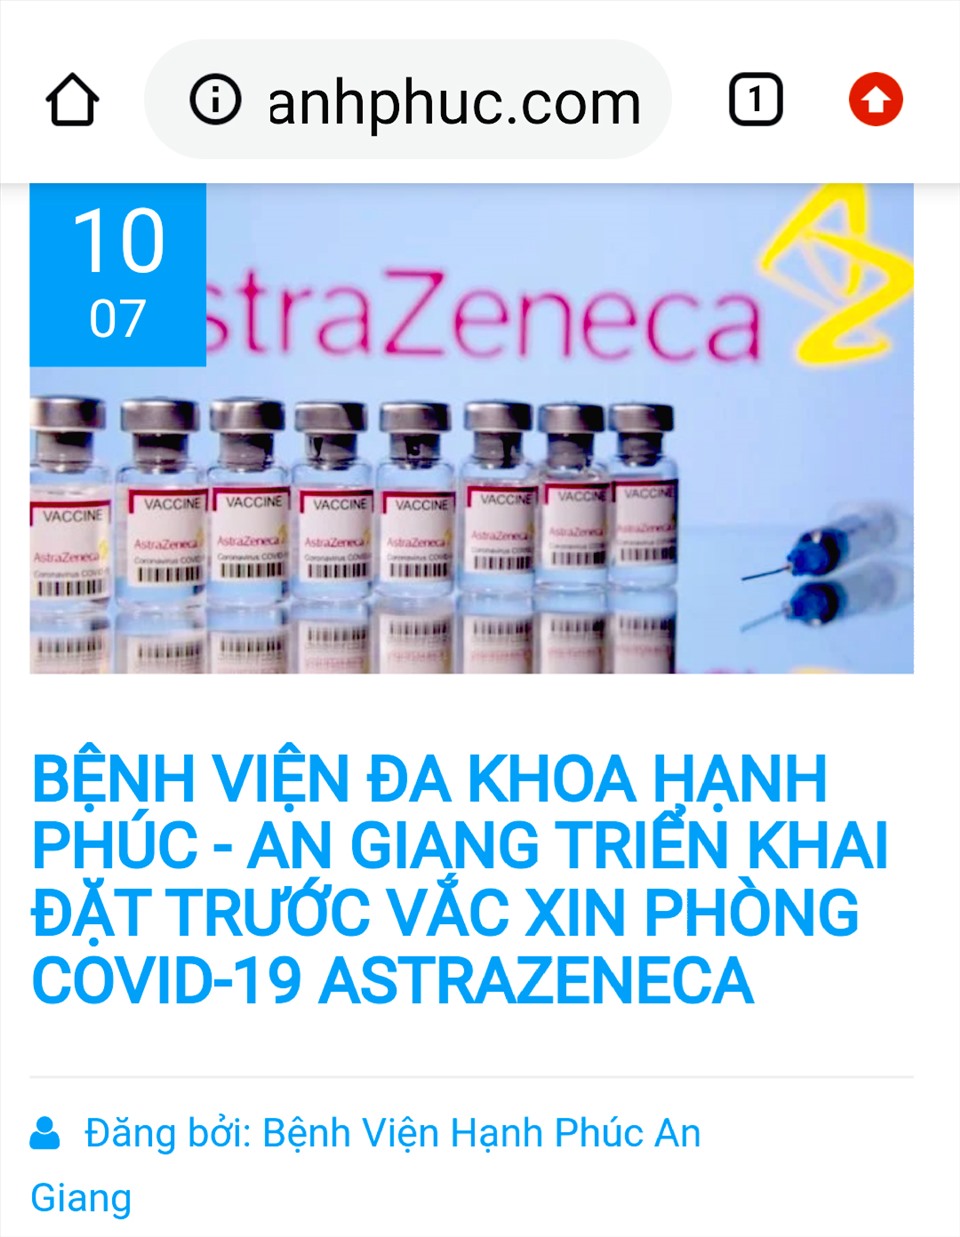 Trên Website của Bệnh viện Đa khoa Hạnh Phúc công khai thông tin khẳng định Vaccine COVID-19 là AstraZenneca. Ảnh: LT